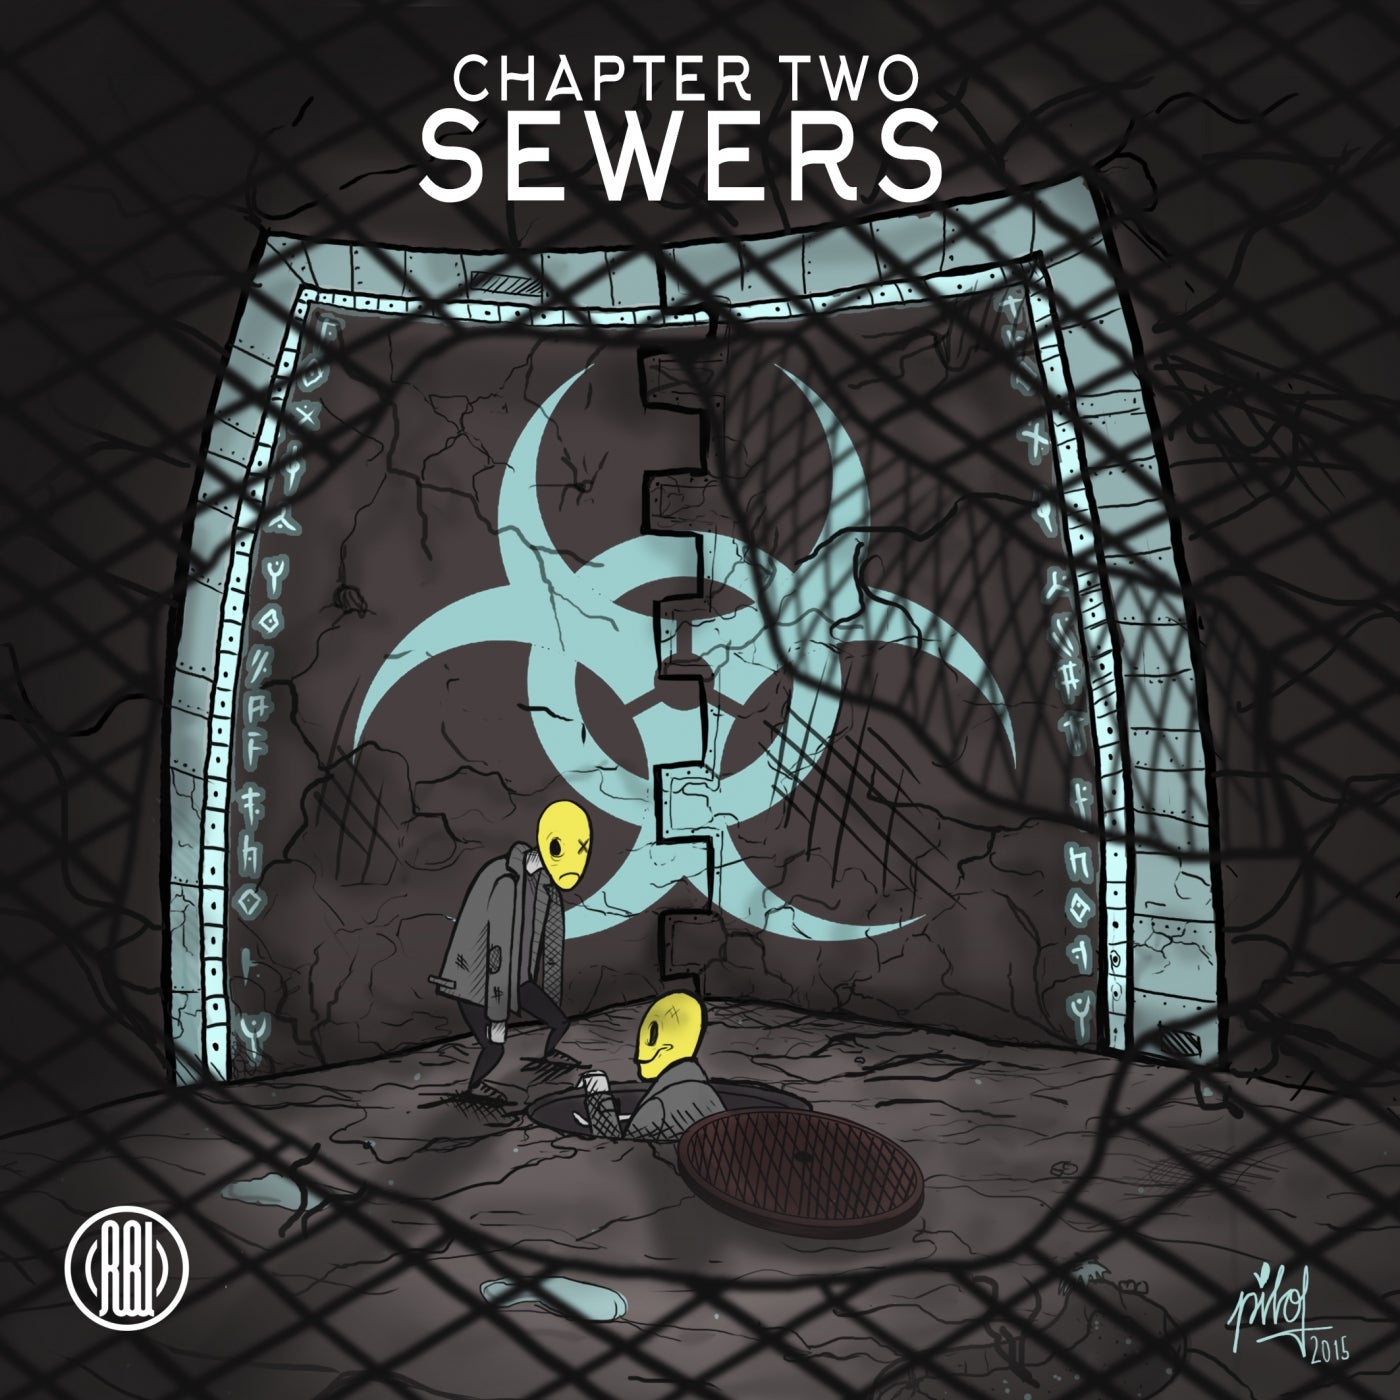 Sewers